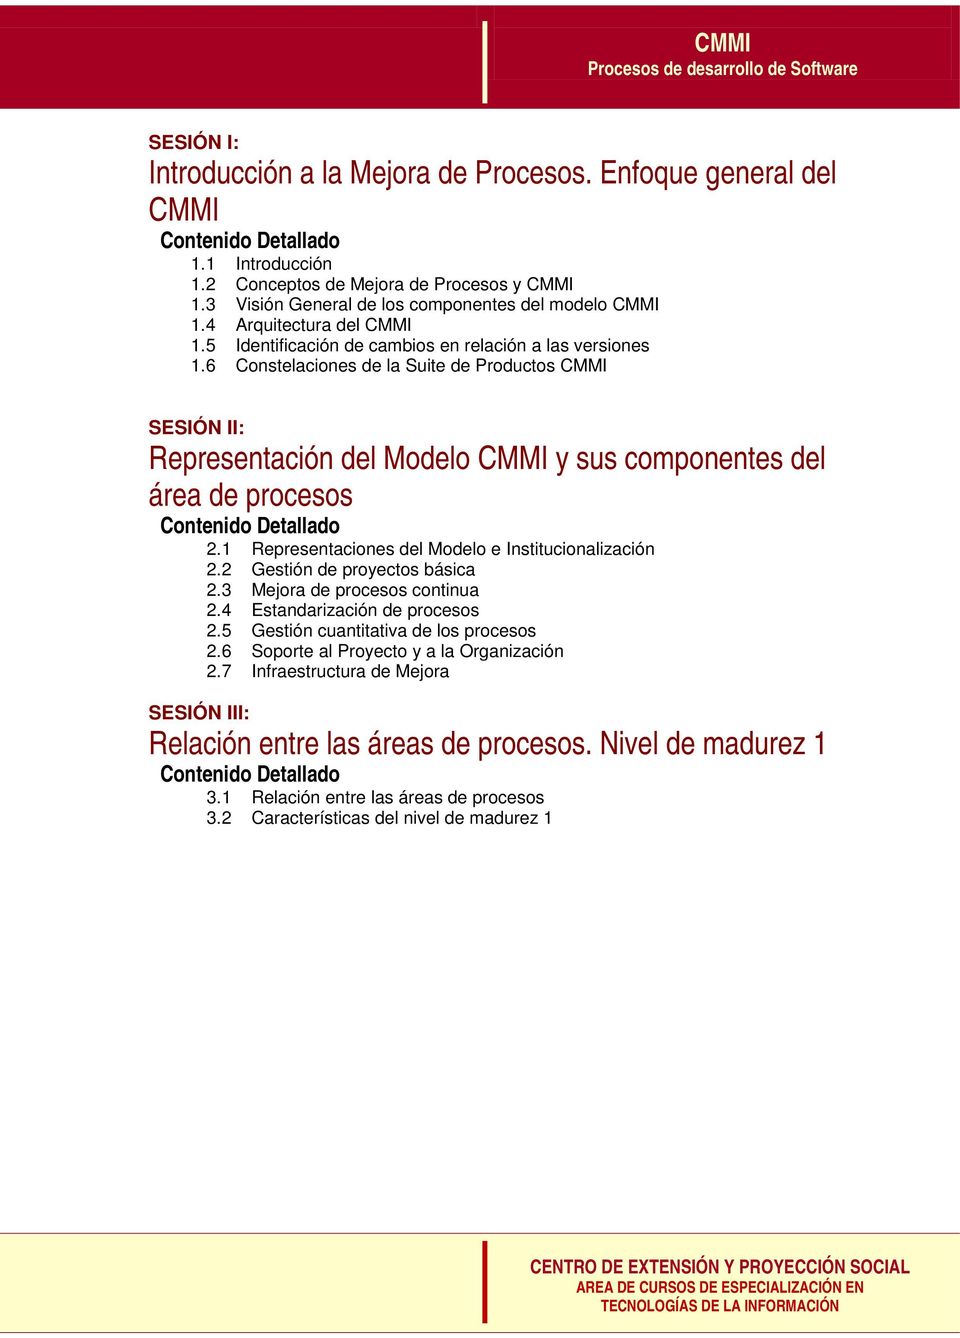 6 Constelaciones de la Suite de Productos CMMI SESIÓN II: Representación del Modelo CMMI y sus componentes del área de procesos 2.1 Representaciones del Modelo e Institucionalización 2.